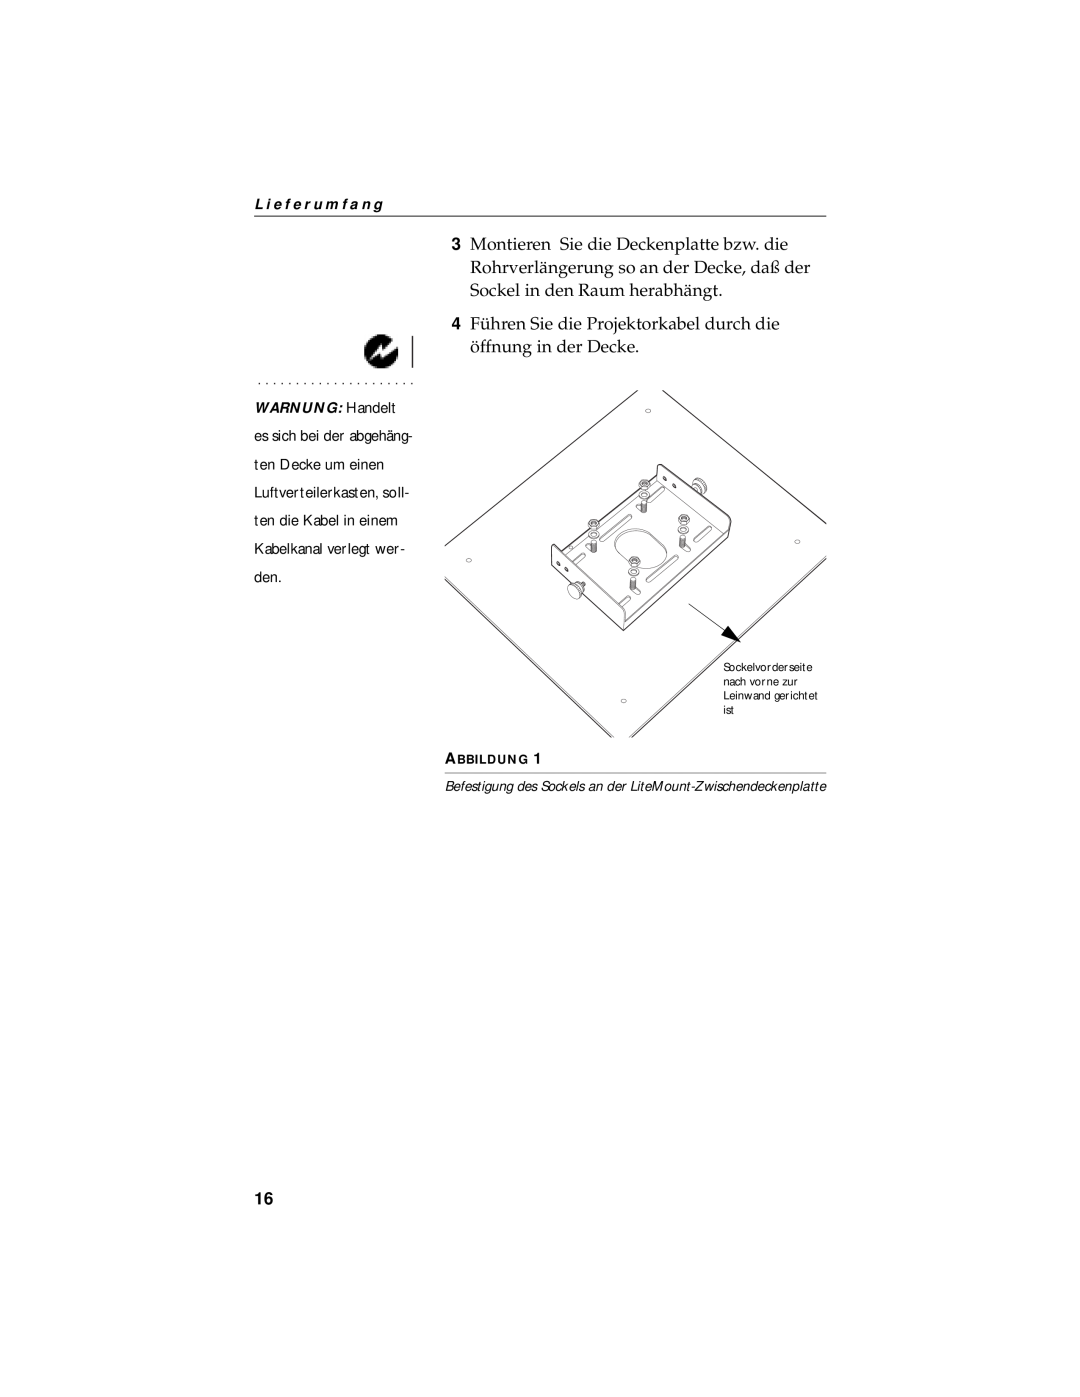 InFocus LP750 manual 4 Führen Sie die Projektorkabel durch die öffnung in der Decke, L i e f e r u m f a n g, Abbildung 